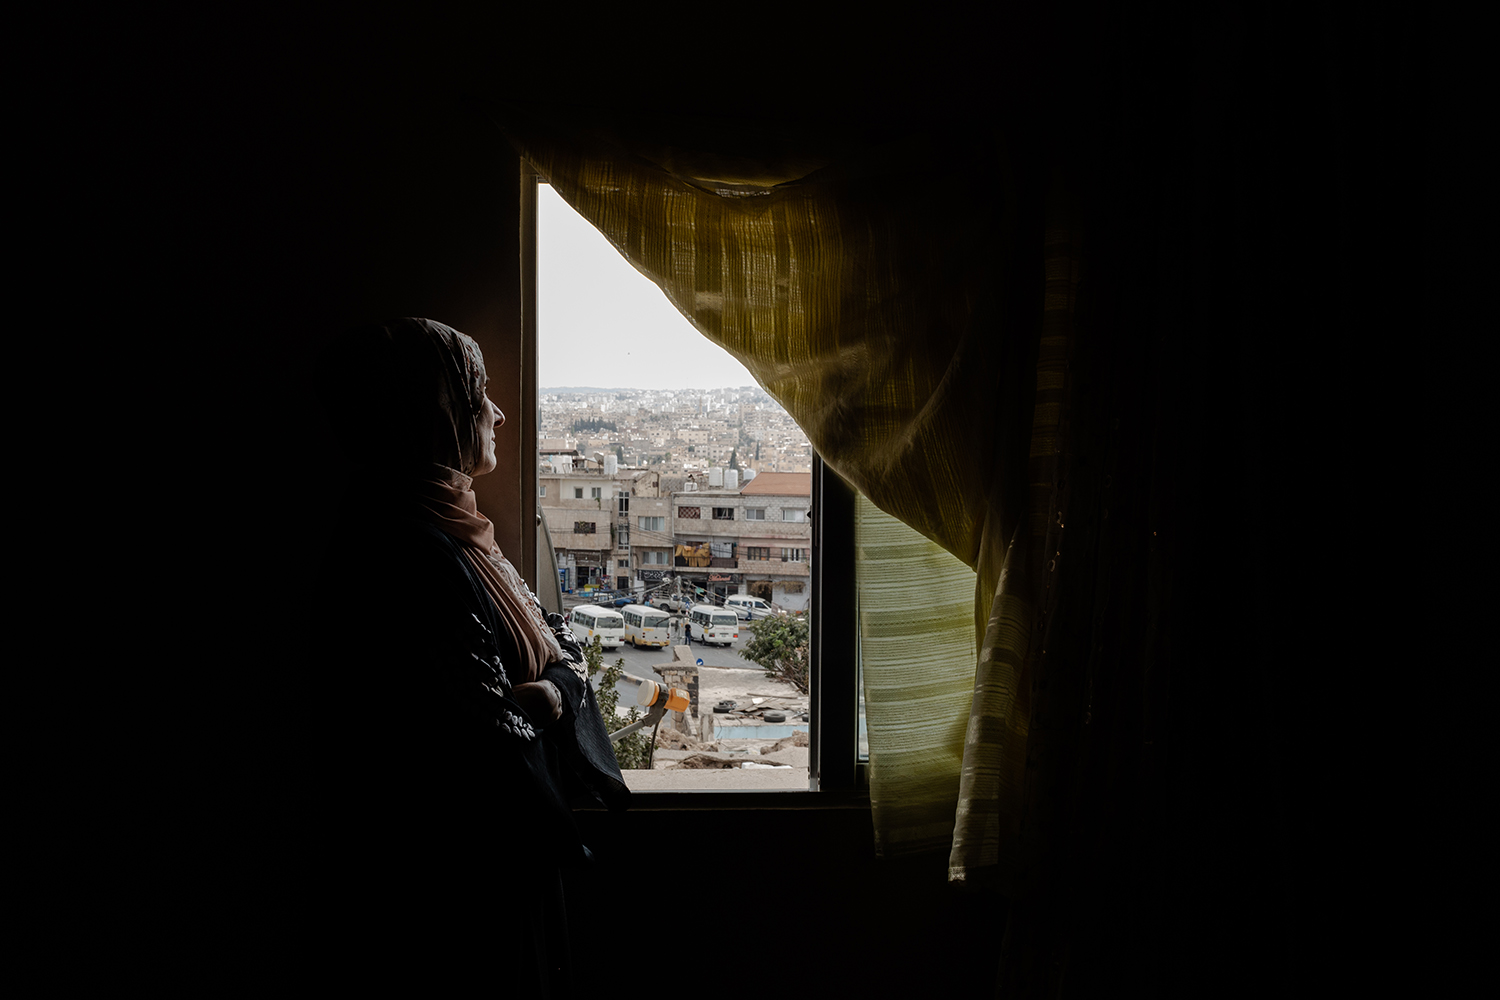 La madre del preso político Anas al-Jamal mira a través de la ventana de su sala de estar.